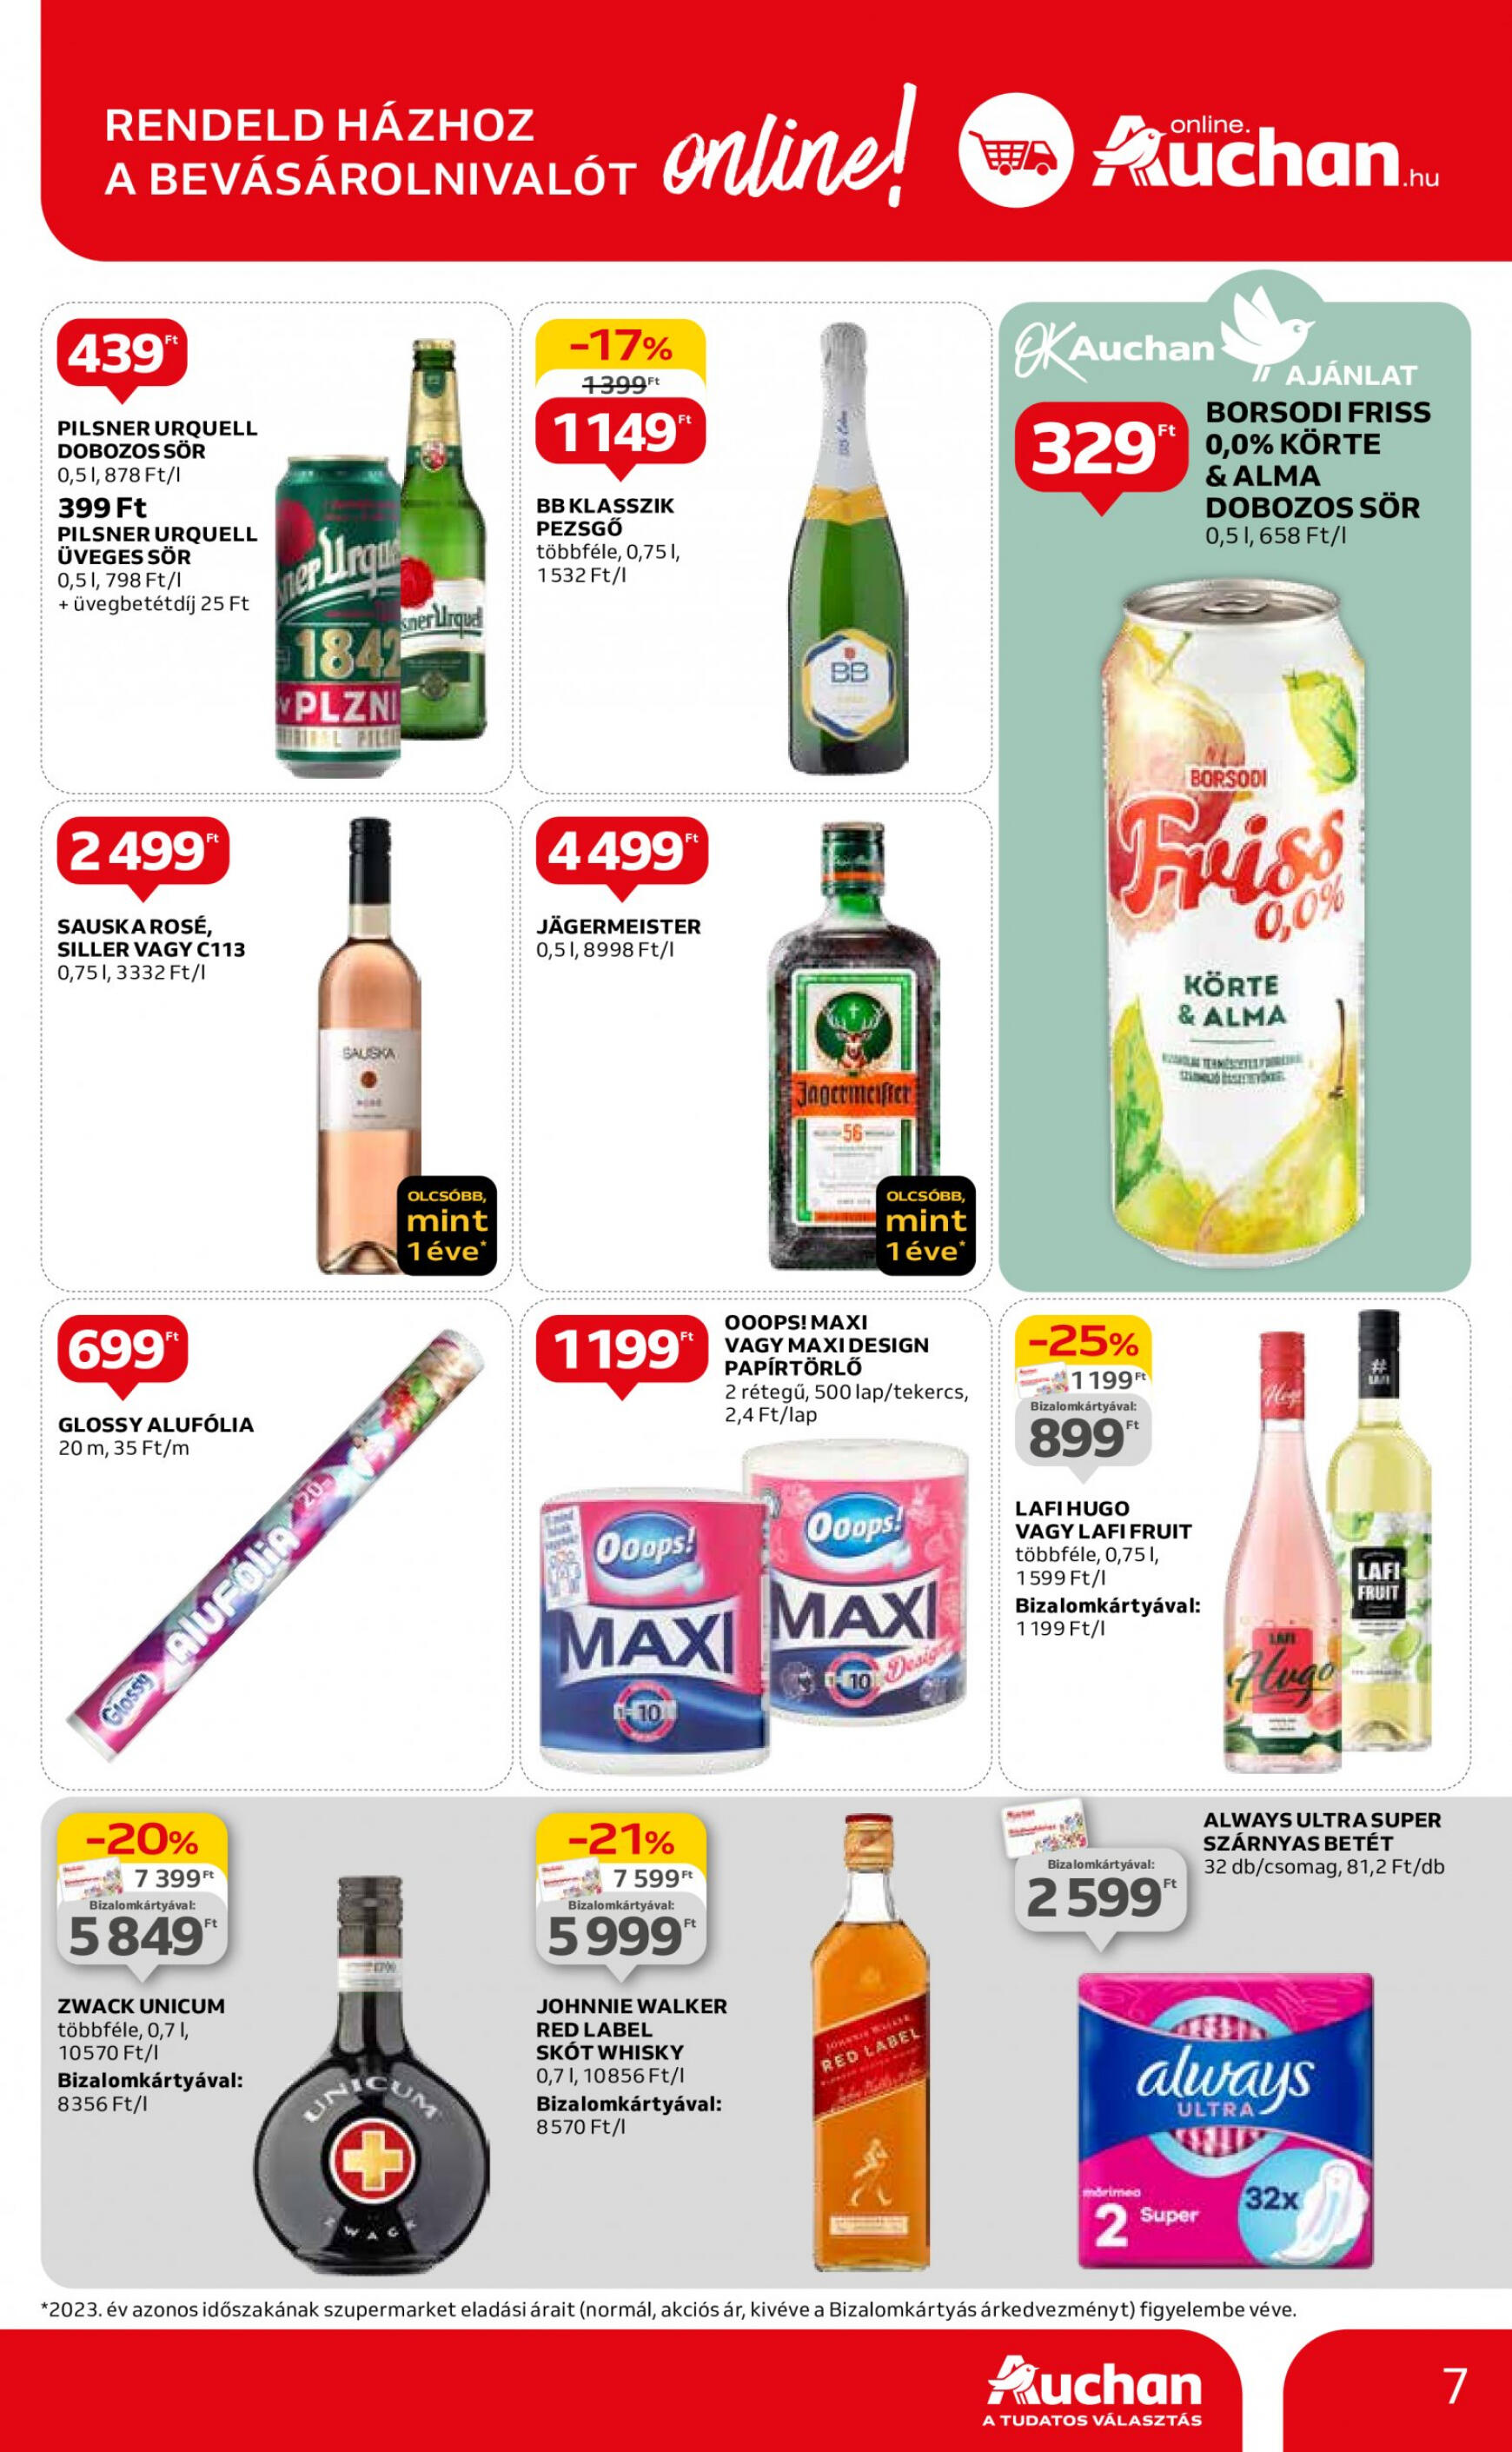 auchan - Aktuális újság Auchan szupermarket 04.18. - 04.24. - page: 7